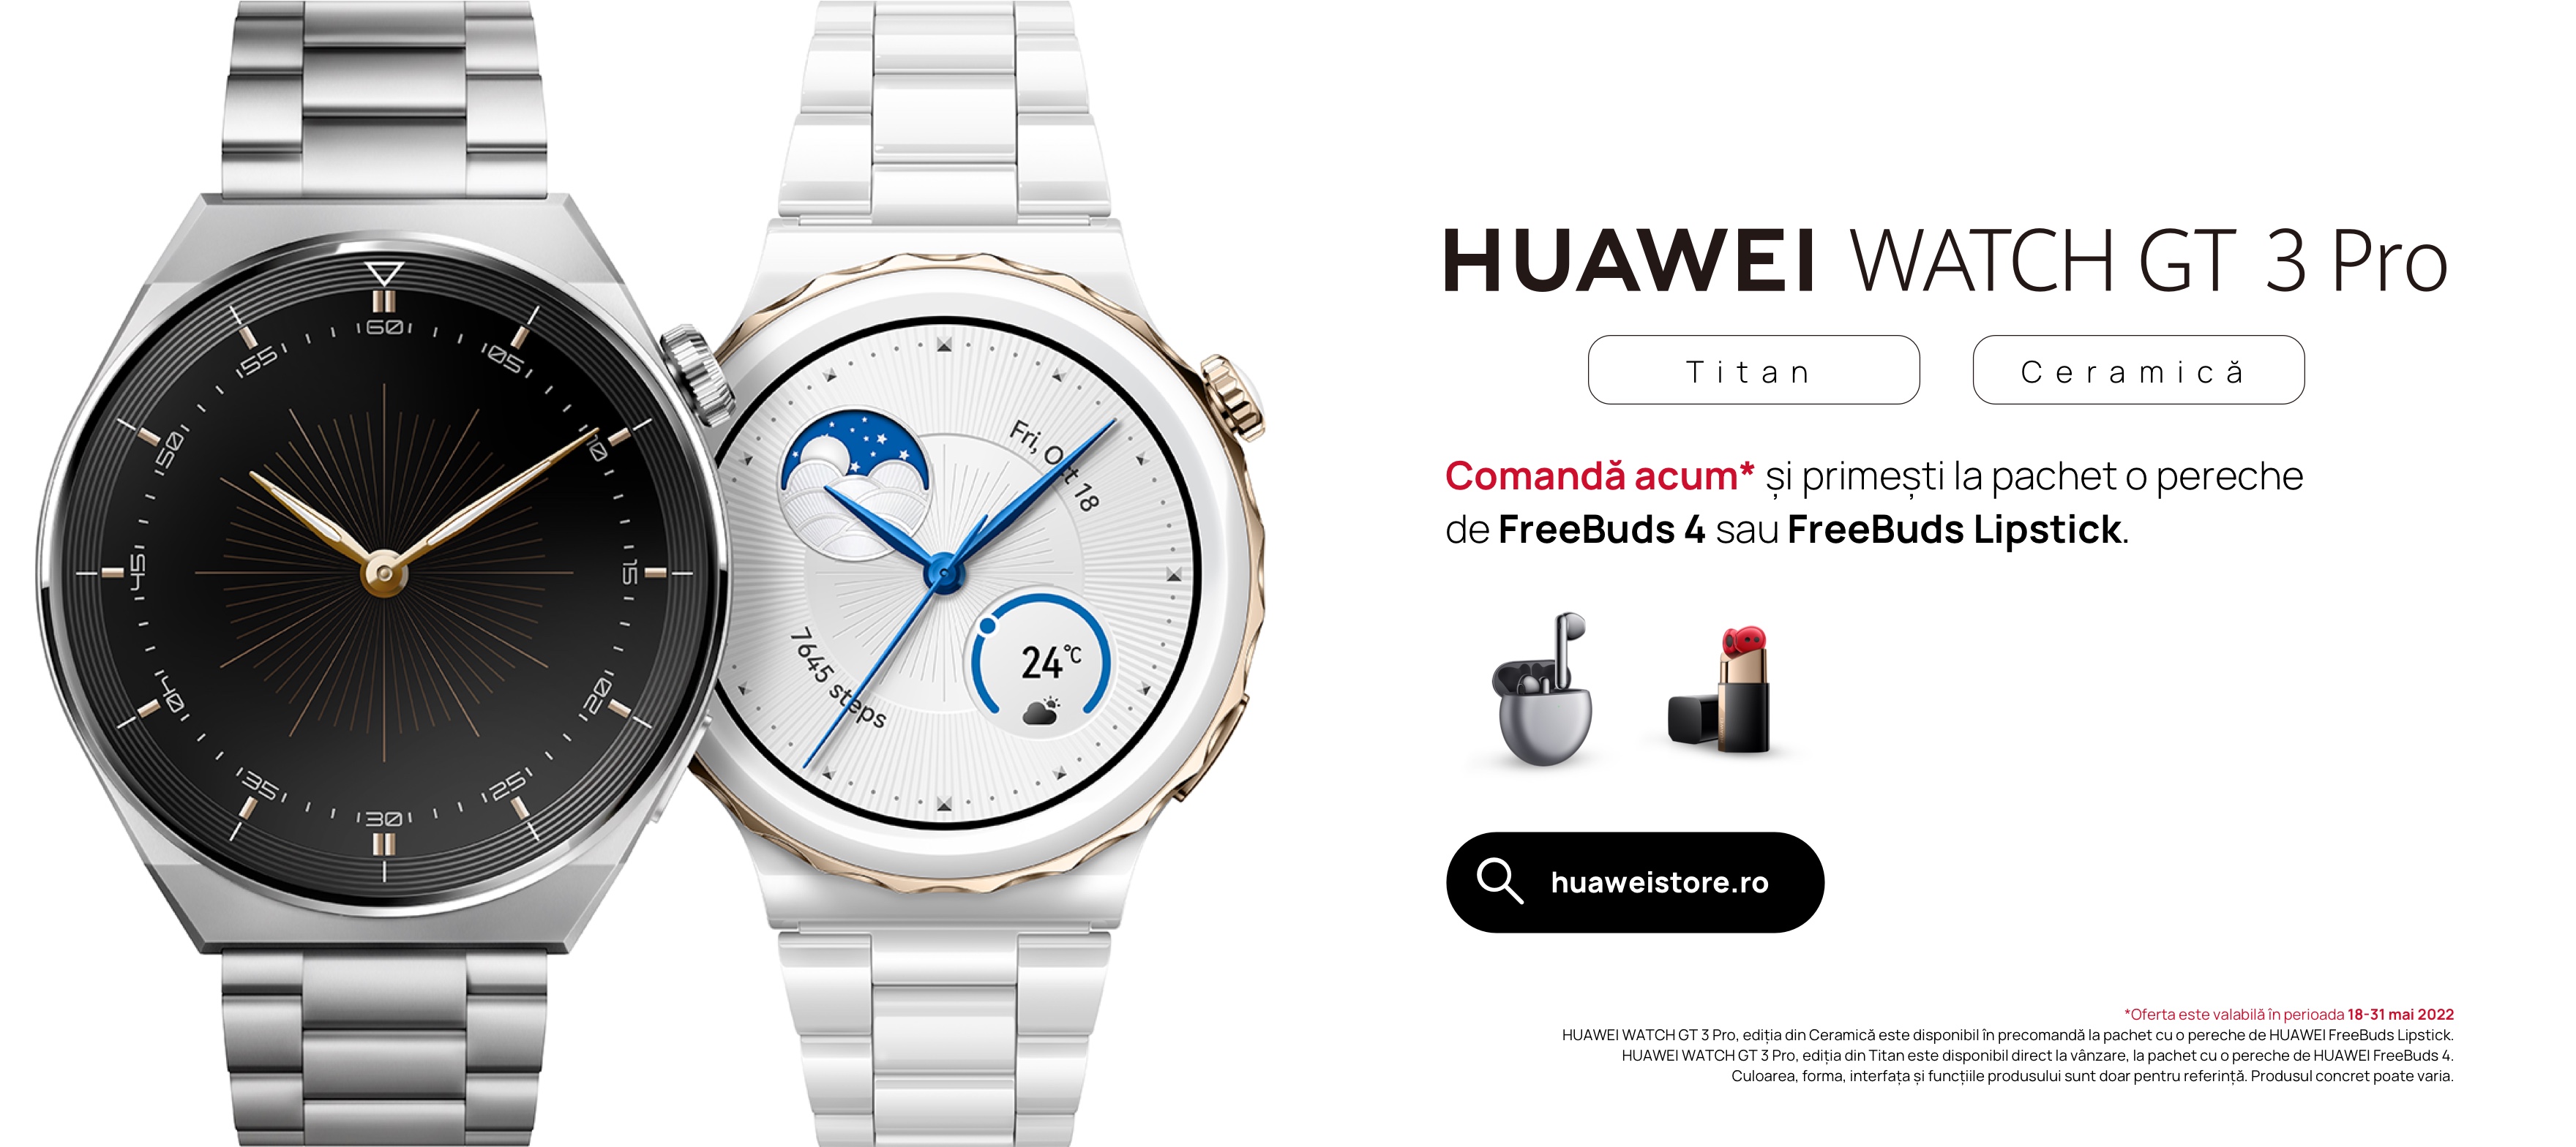 HUAWEI WATCH GT 3 Pro a fost lansat – cel mai elegant ceas din gama Huawei wearables